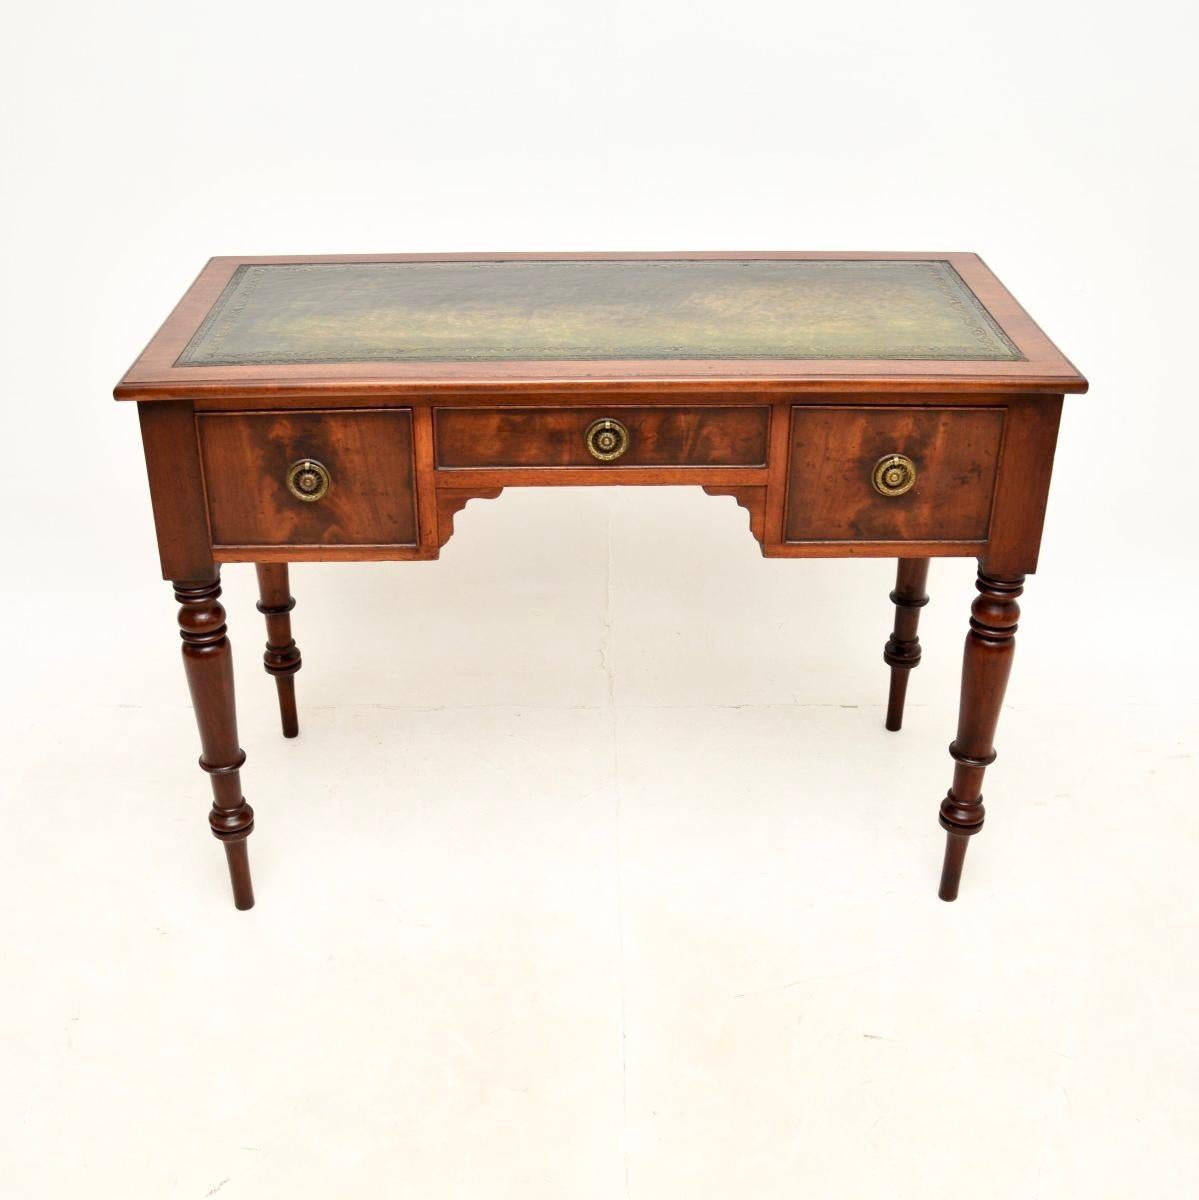 Eine charmante und sehr gut gemacht antiken georgischen Schreibtisch / Schreibtisch. Sie wurde in England hergestellt, wir würden sie auf die Zeit zwischen 1800 und 1820 datieren.

Es ist von hervorragender Qualität, das ist eine sehr nützliche und